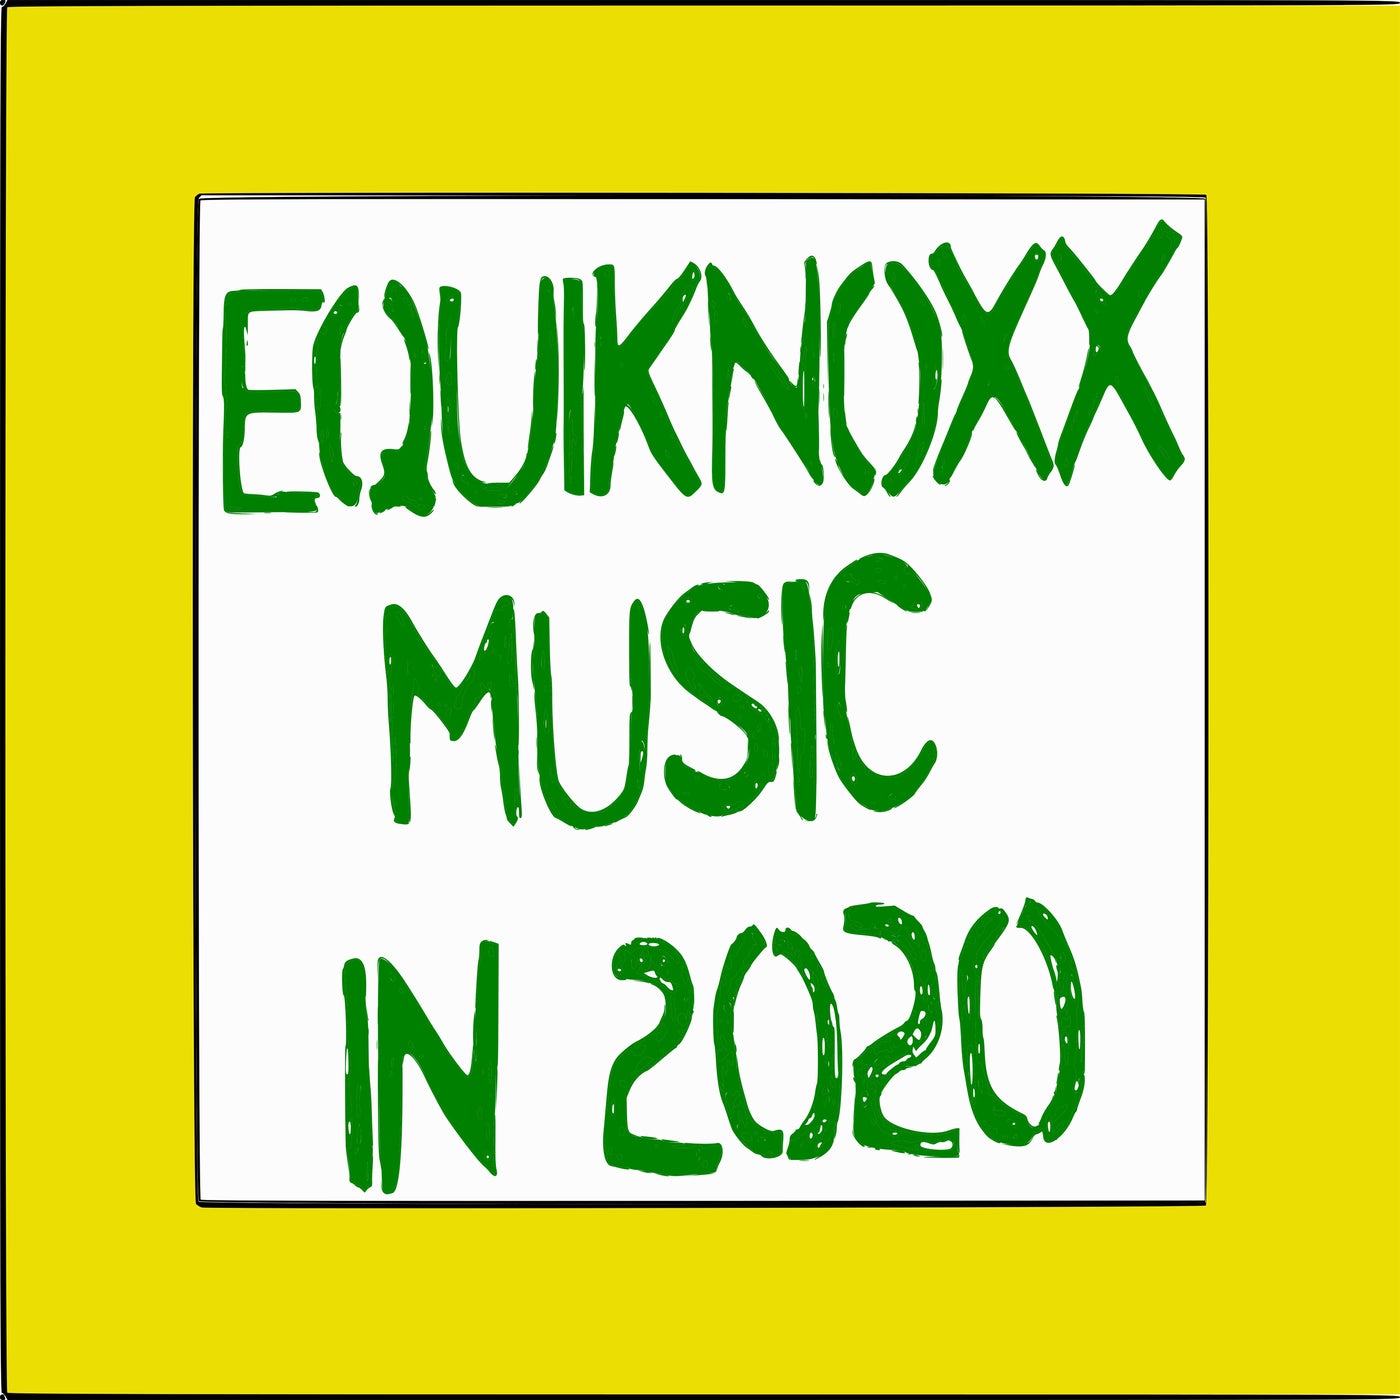 Equiknoxx Music in 2020